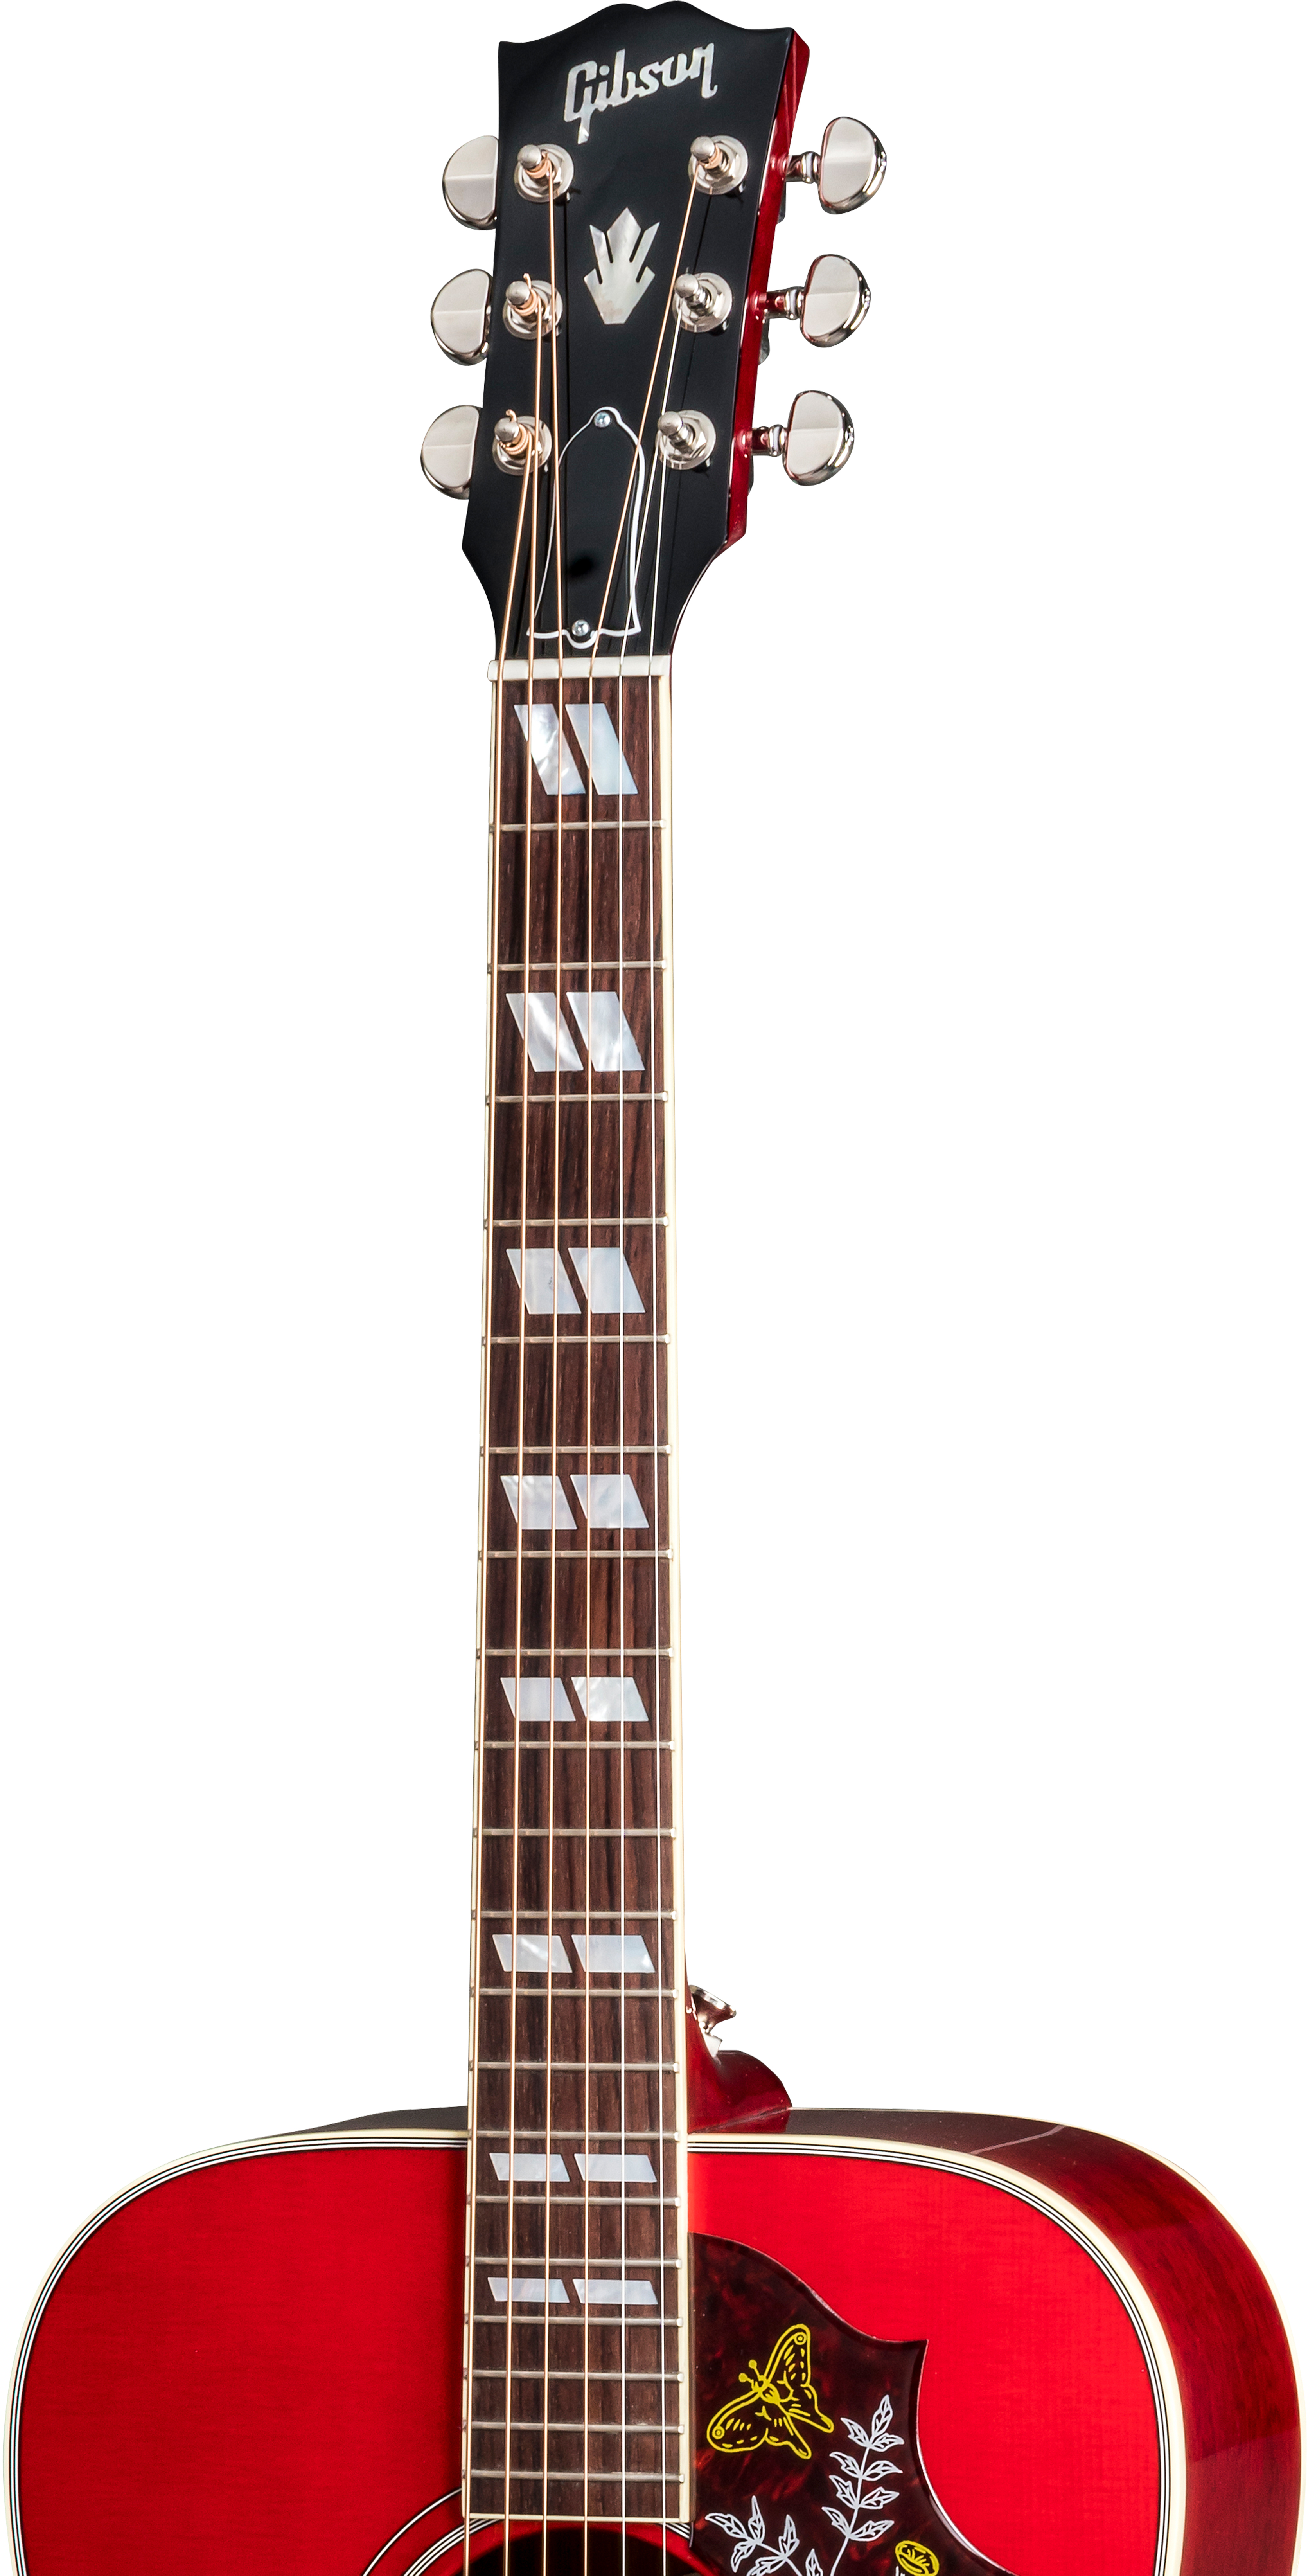 Gibson Hummingbird 2019 Dreadnought Epicea Acajou Rw - Vintage Cherry Sunburst - Westerngitarre & electro - Variation 2